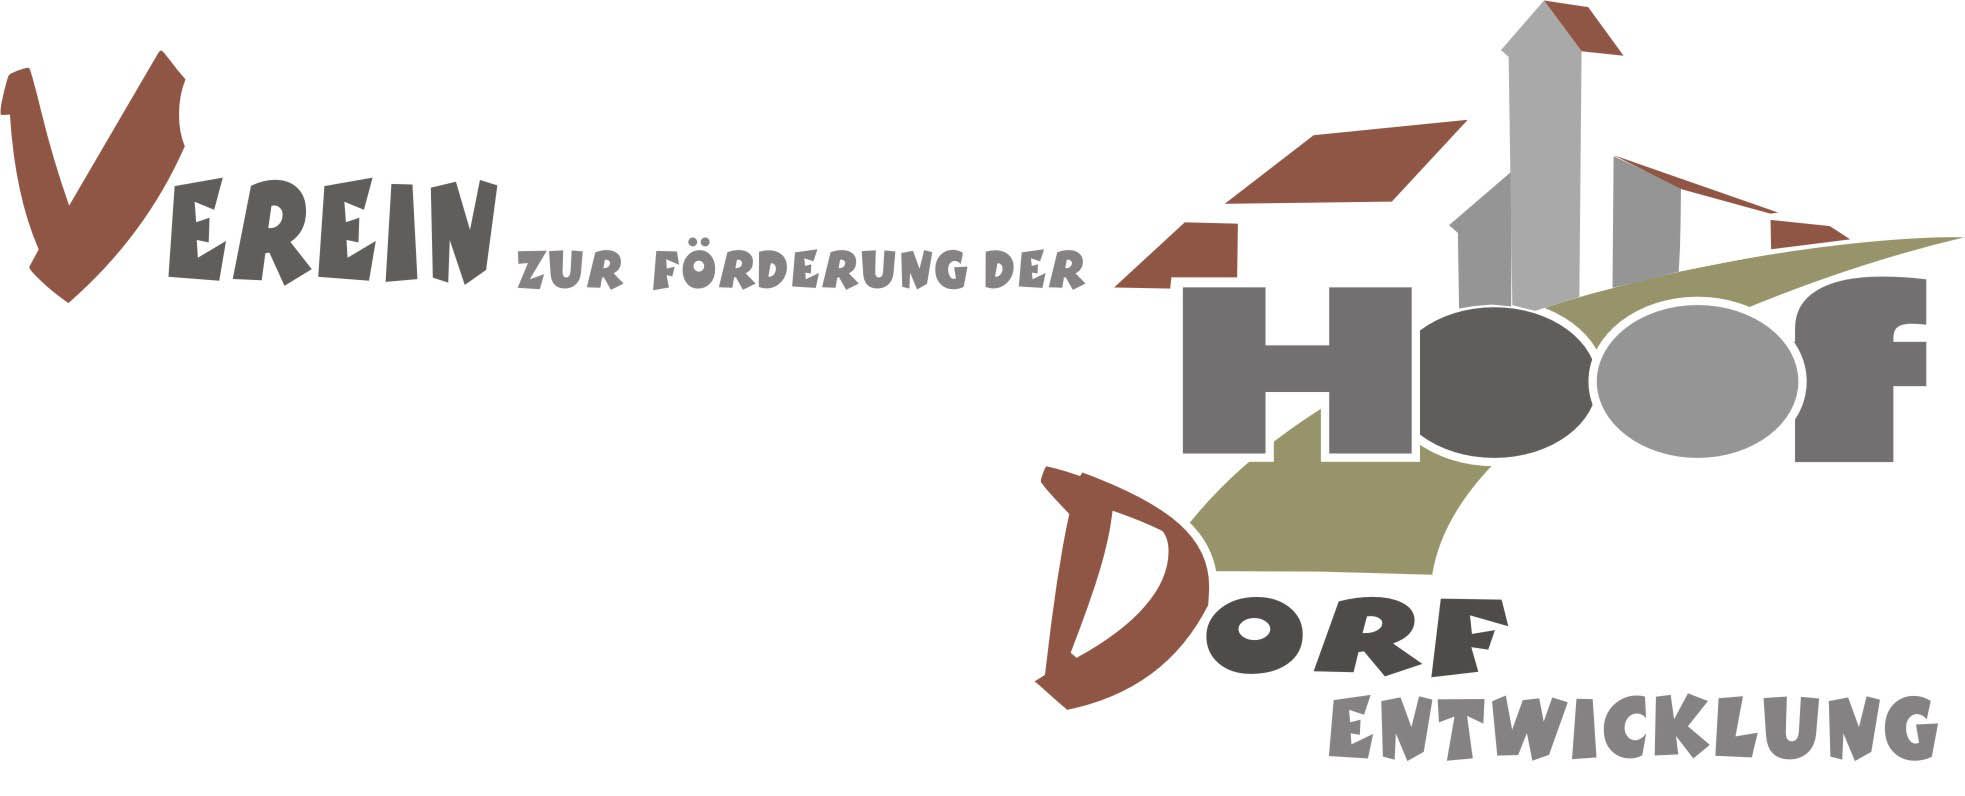 Profilbild des Vereins Verein zur Förderung der Dorfentwicklung Hoof e.V.